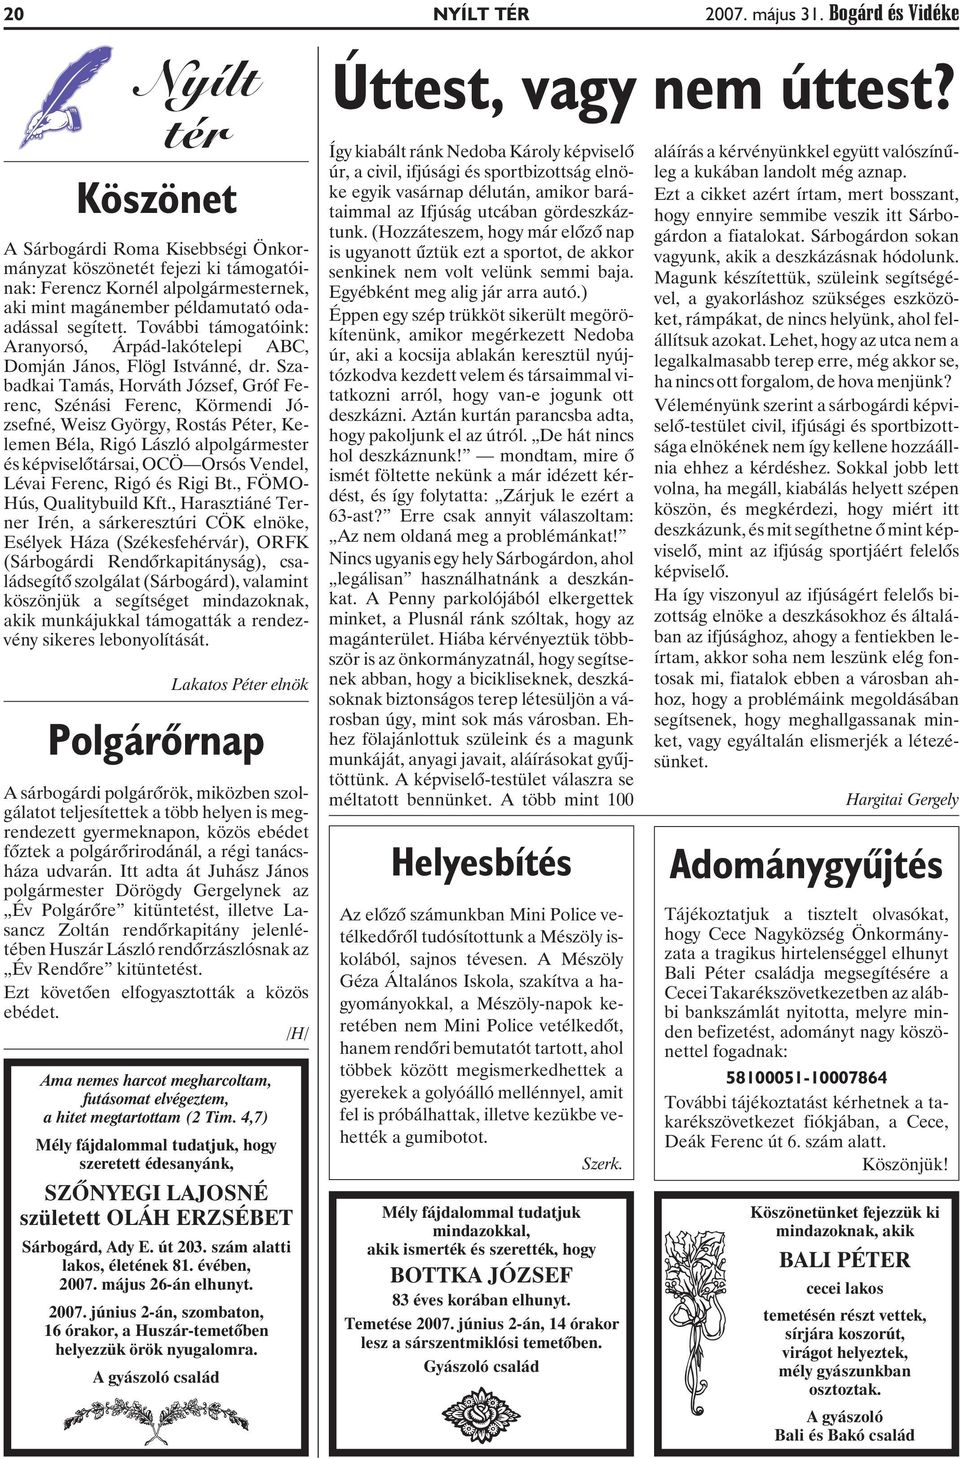 További támogatóink: Aranyorsó, Árpád-lakótelepi ABC, Domján János, Flögl Istvánné, dr.